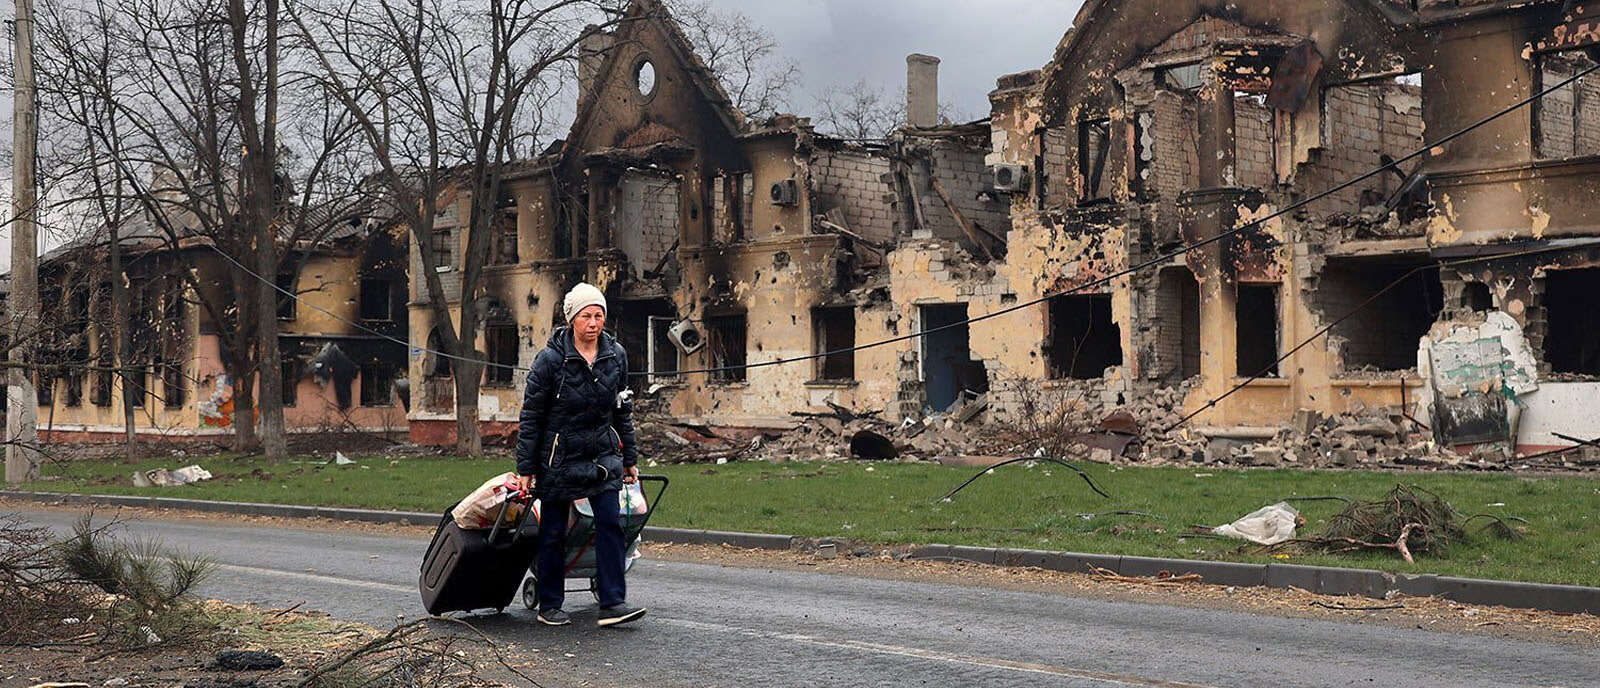 A Marioupol, dans le sud-est de l'Ukraine, les civils sont pris au piège des combats | © manhhai/Flickr/CC BY 2.0